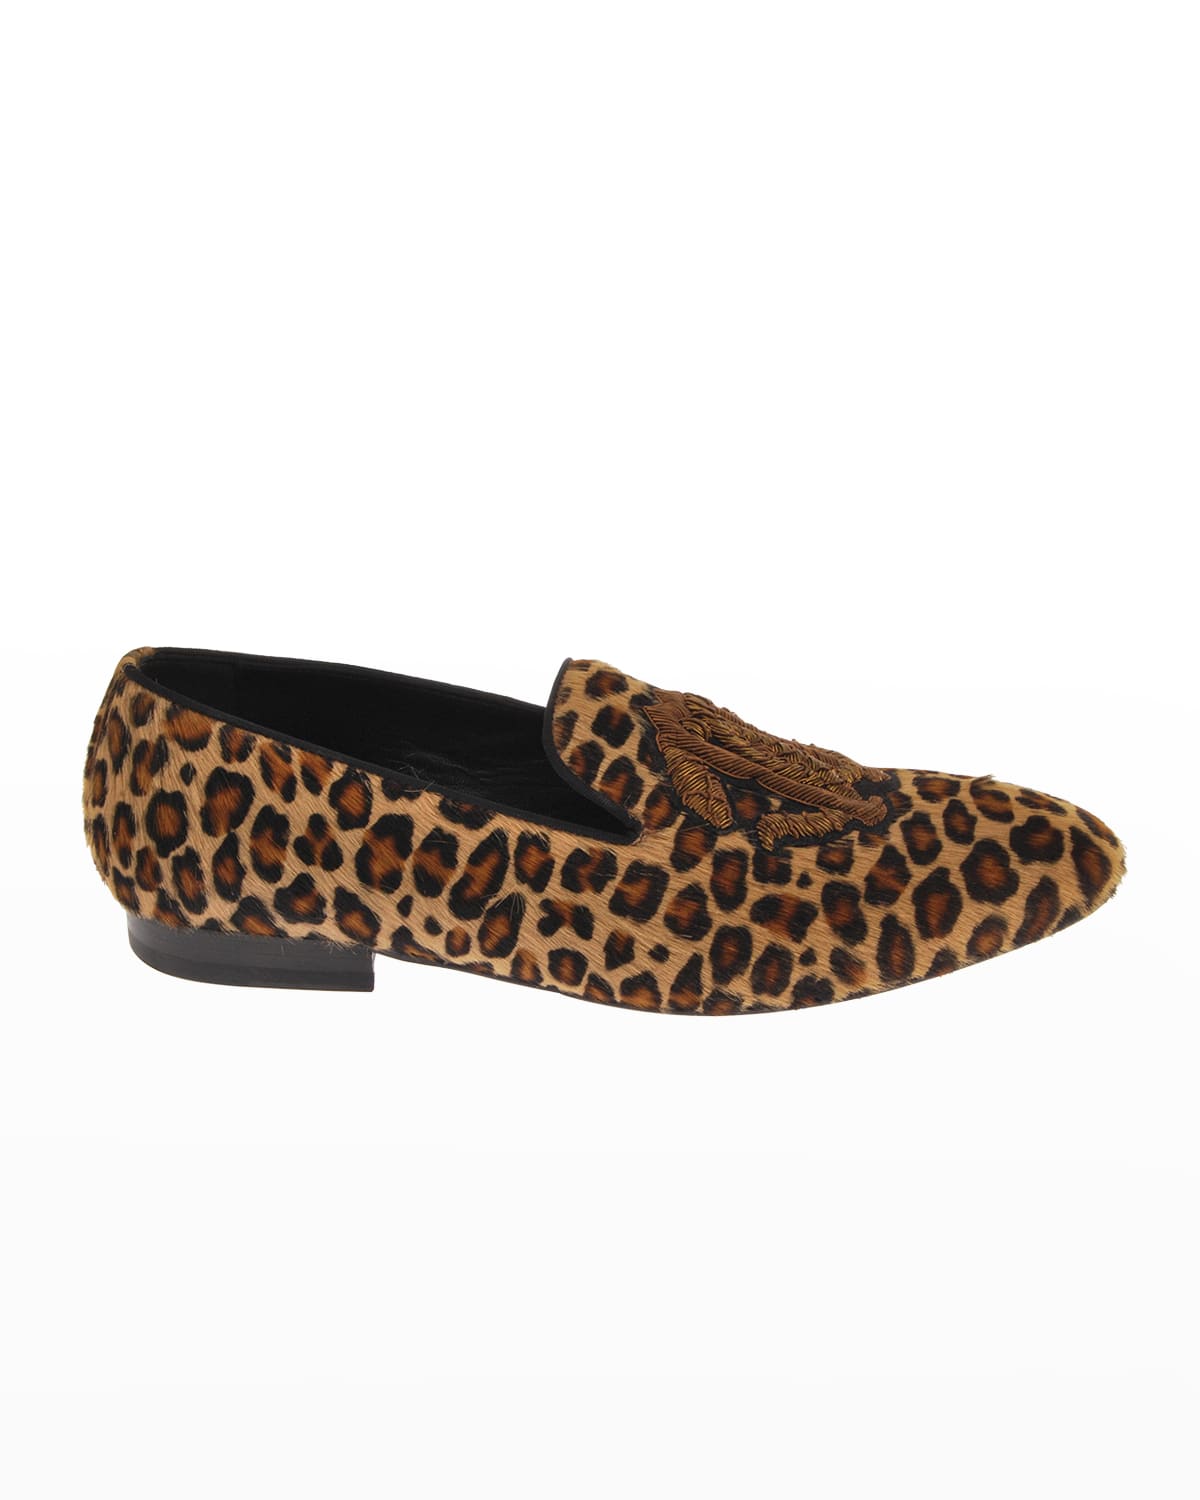 Men's Cheetah-Print Calf Fur Loafers